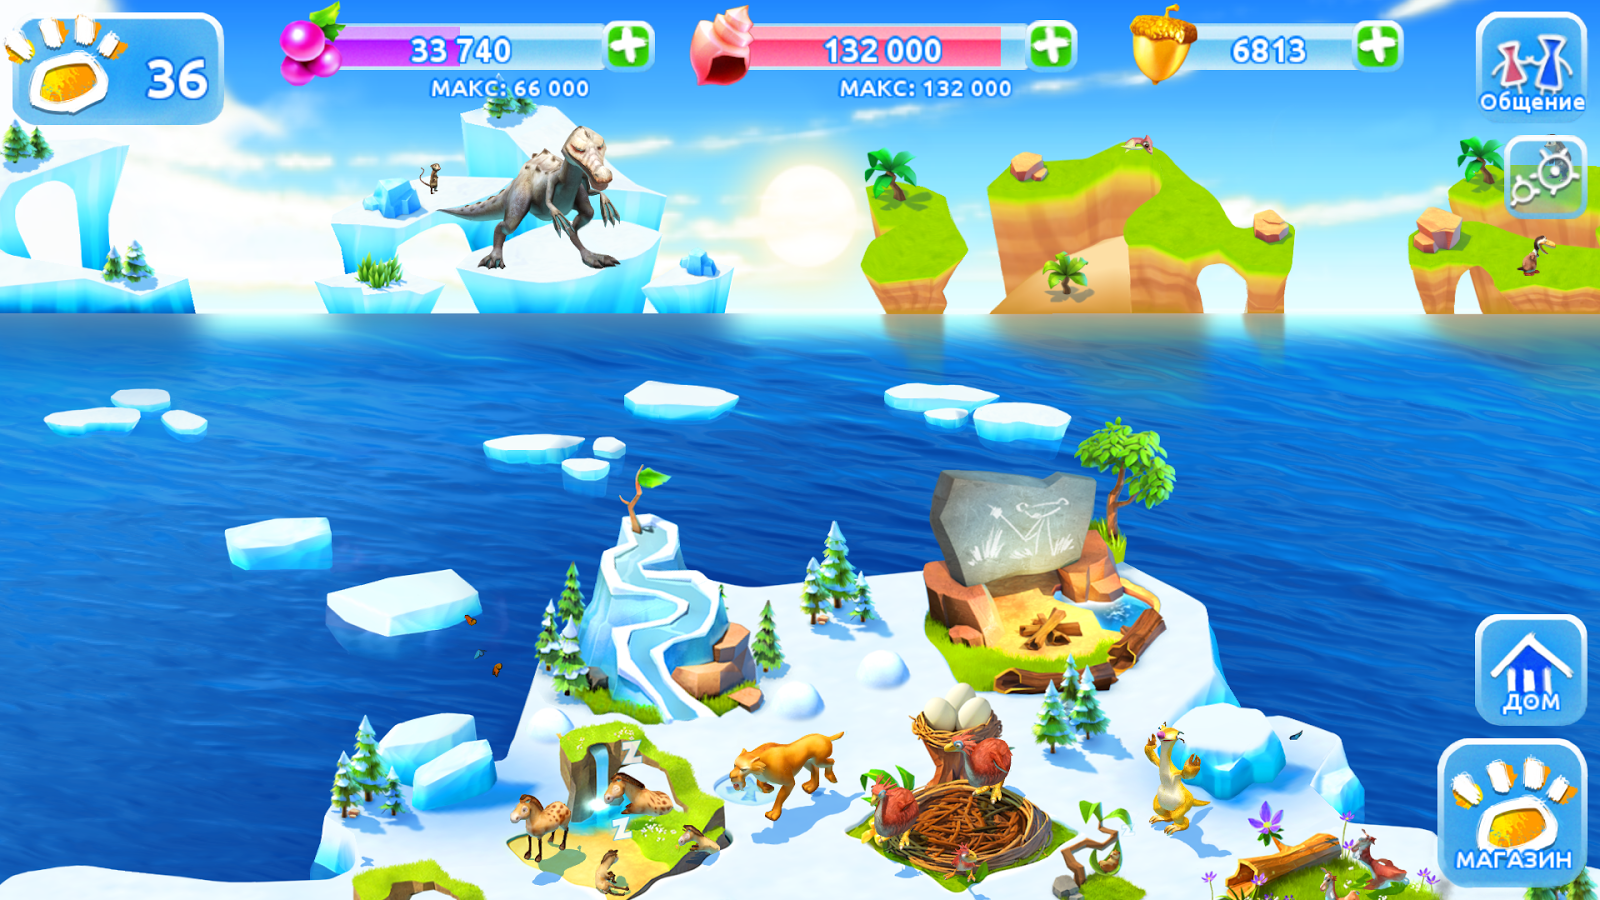 Ледниковый период приключения игра скачать на компьютер